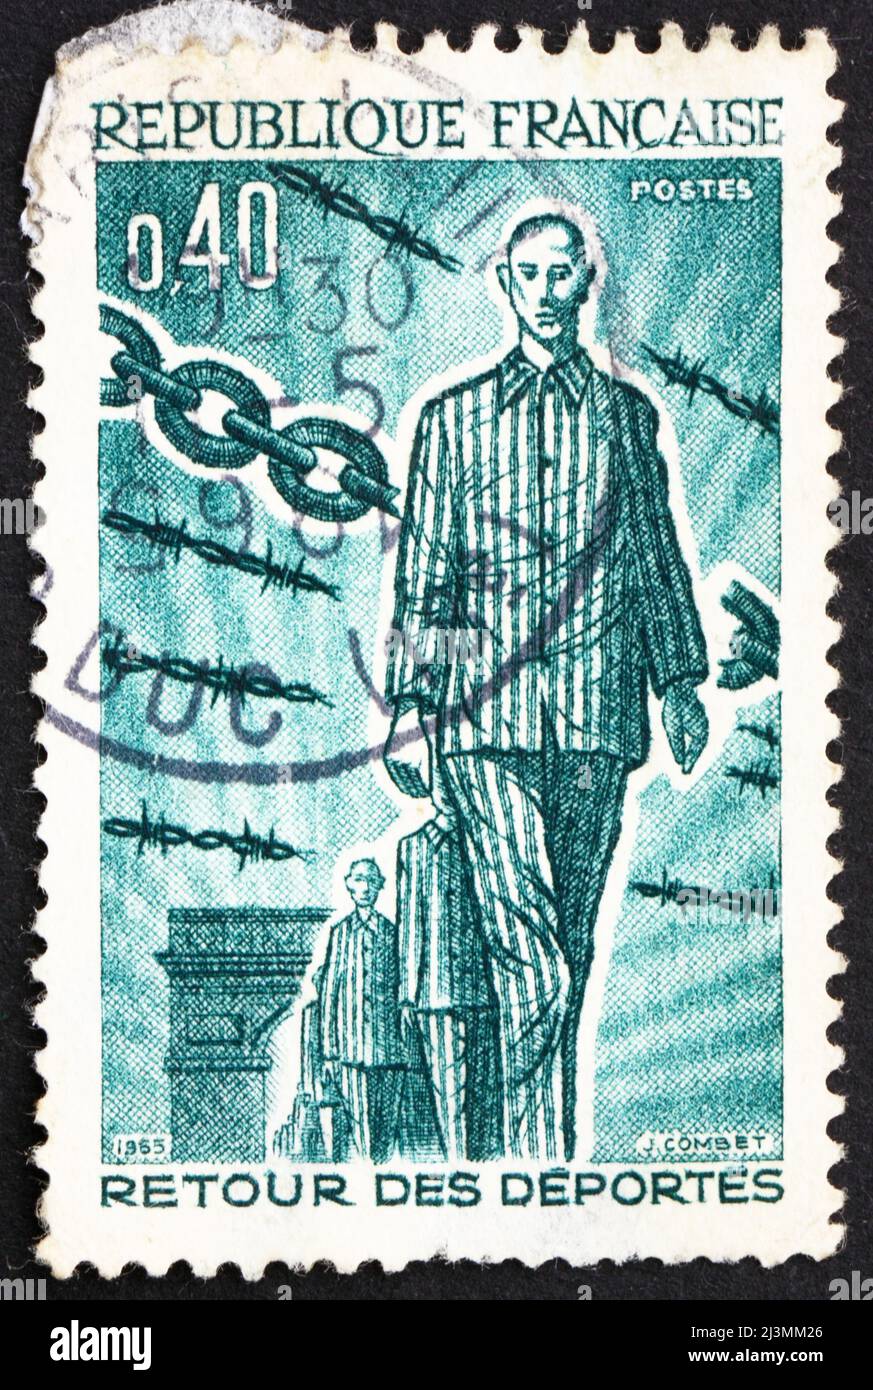 FRANKREICH - UM 1965: Eine in Frankreich gedruckte Briefmarke zeigt die Rückkehr der Deportierten, 1945., 20.. Jahrestag der Rückkehr der während des Zweiten Weltkriegs deportierten Personen, CIR Stockfoto